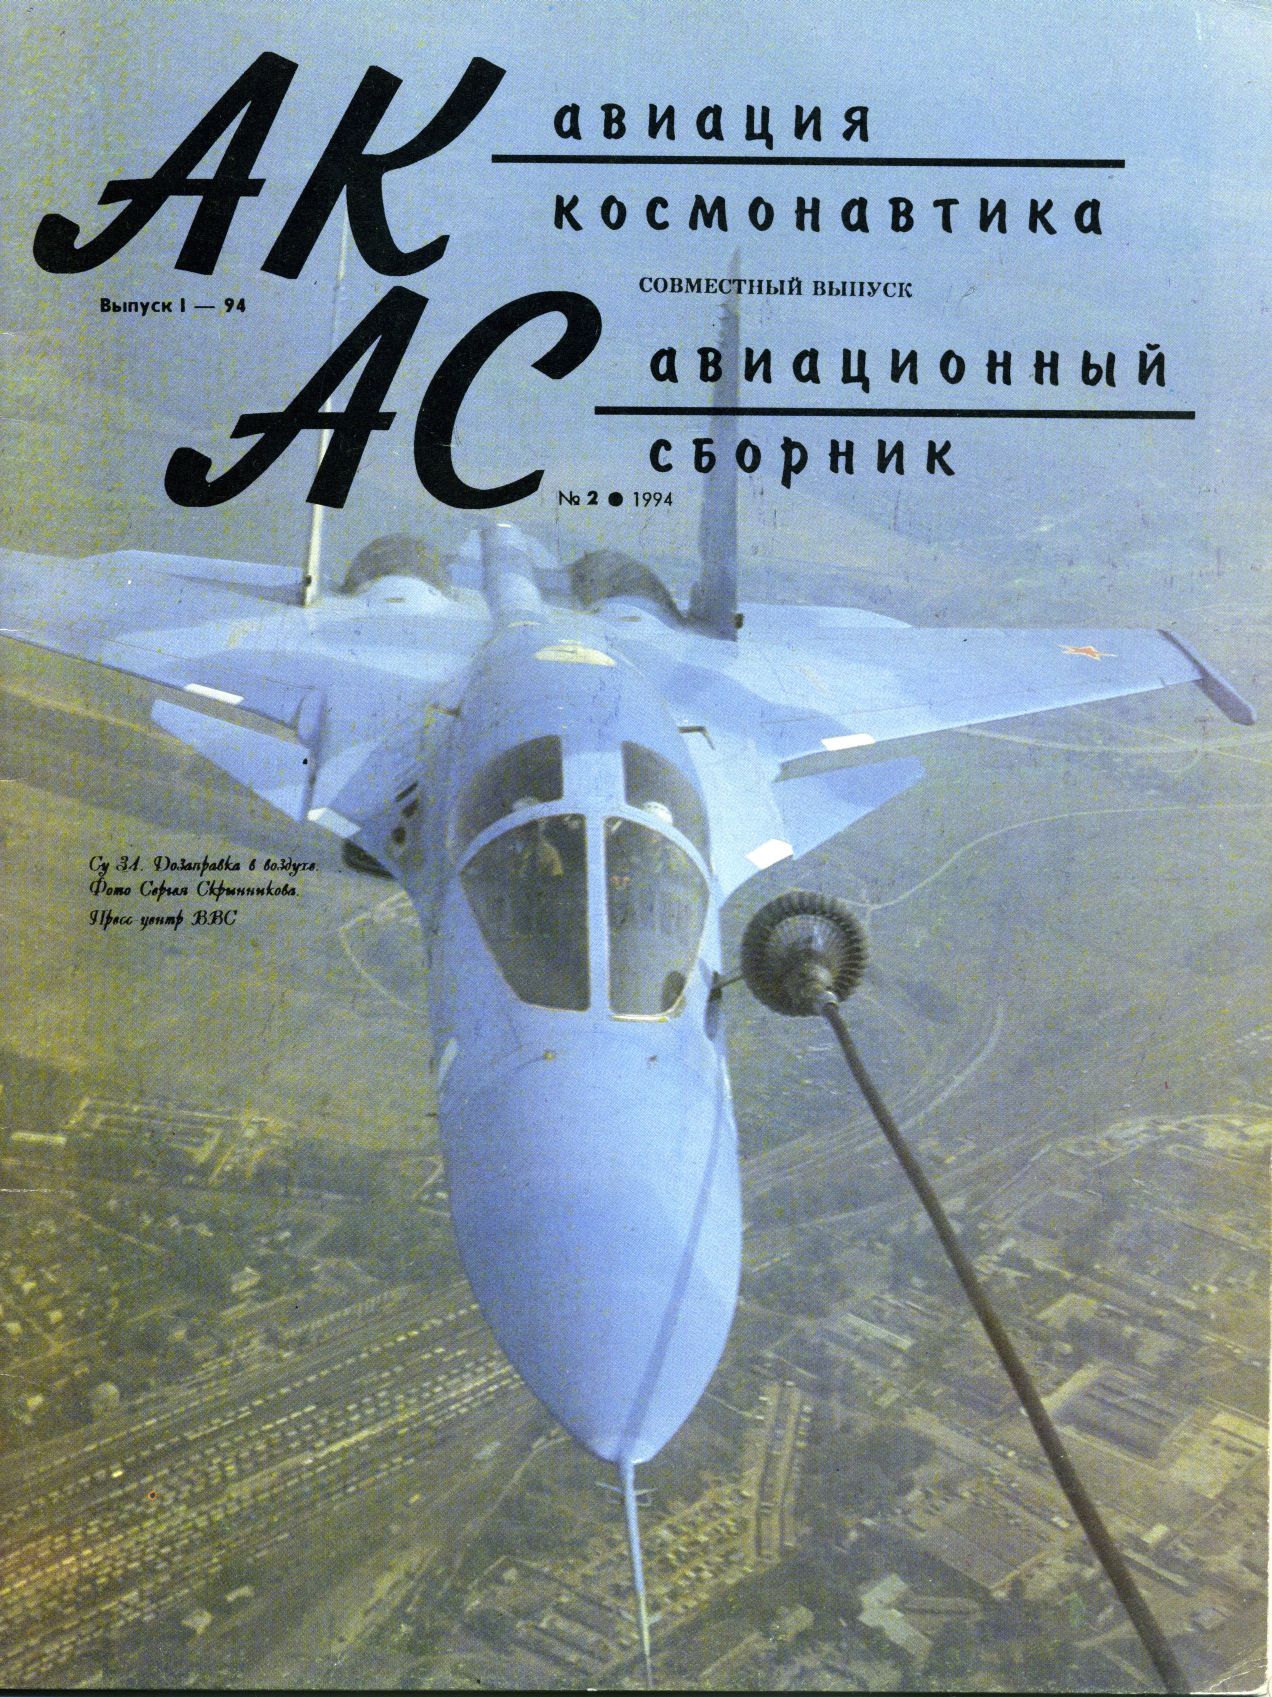 Автор неизвестен - Авиация и космонавтика 1994 01 скачать бесплатно